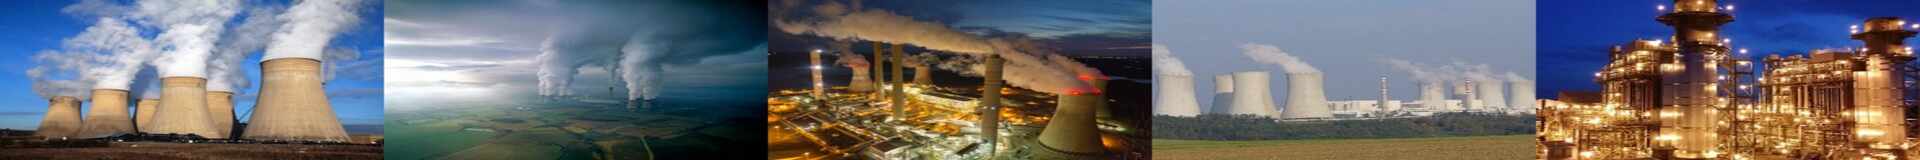 International Kuwait non renewable energy tenders 